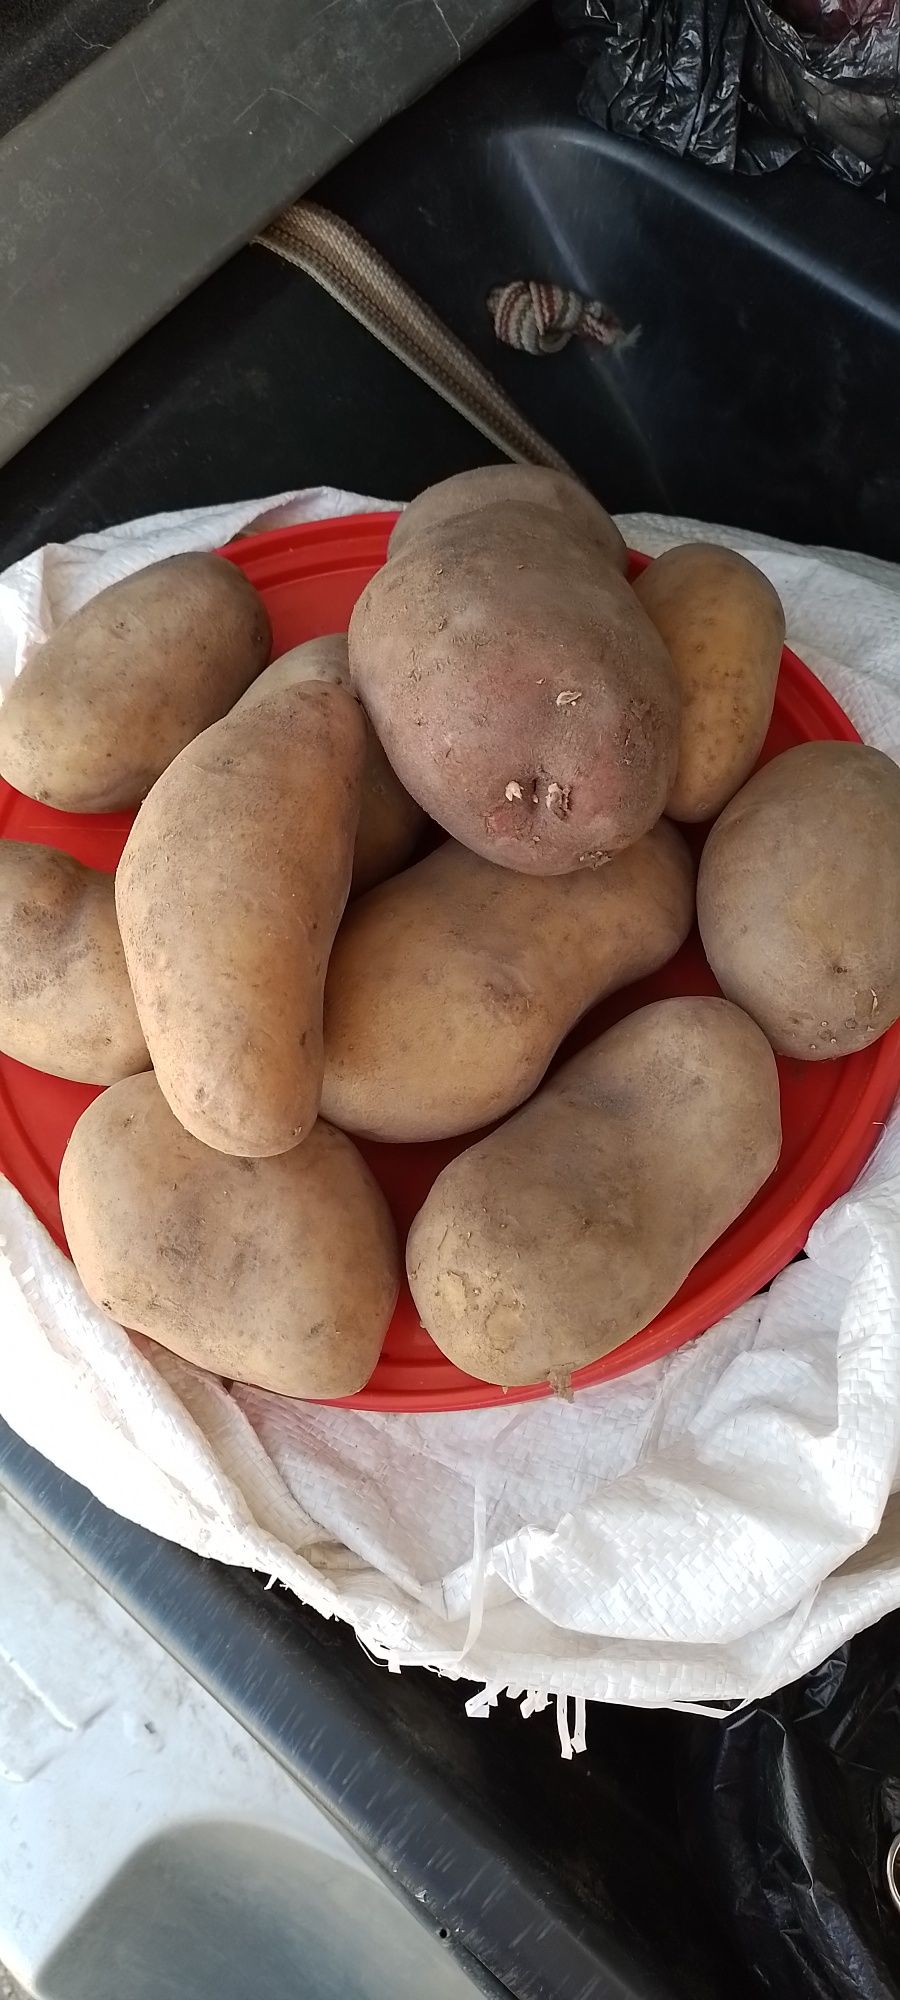 Продам картофель домашний,вкусный 300тг за кг